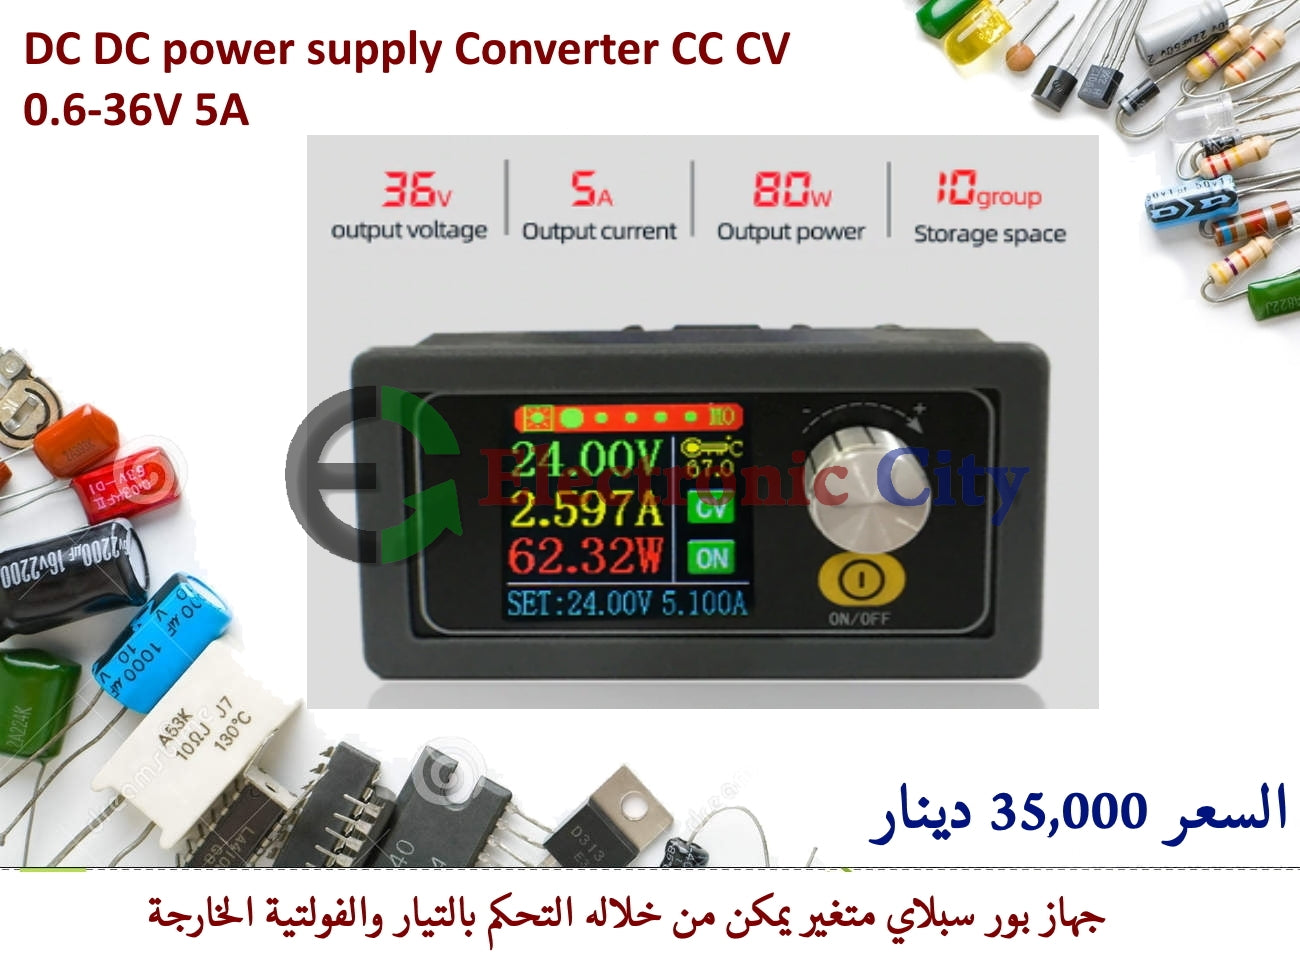 DC DC power supply Converter CC CV 0.6-36V 5A #P2 XJ0041